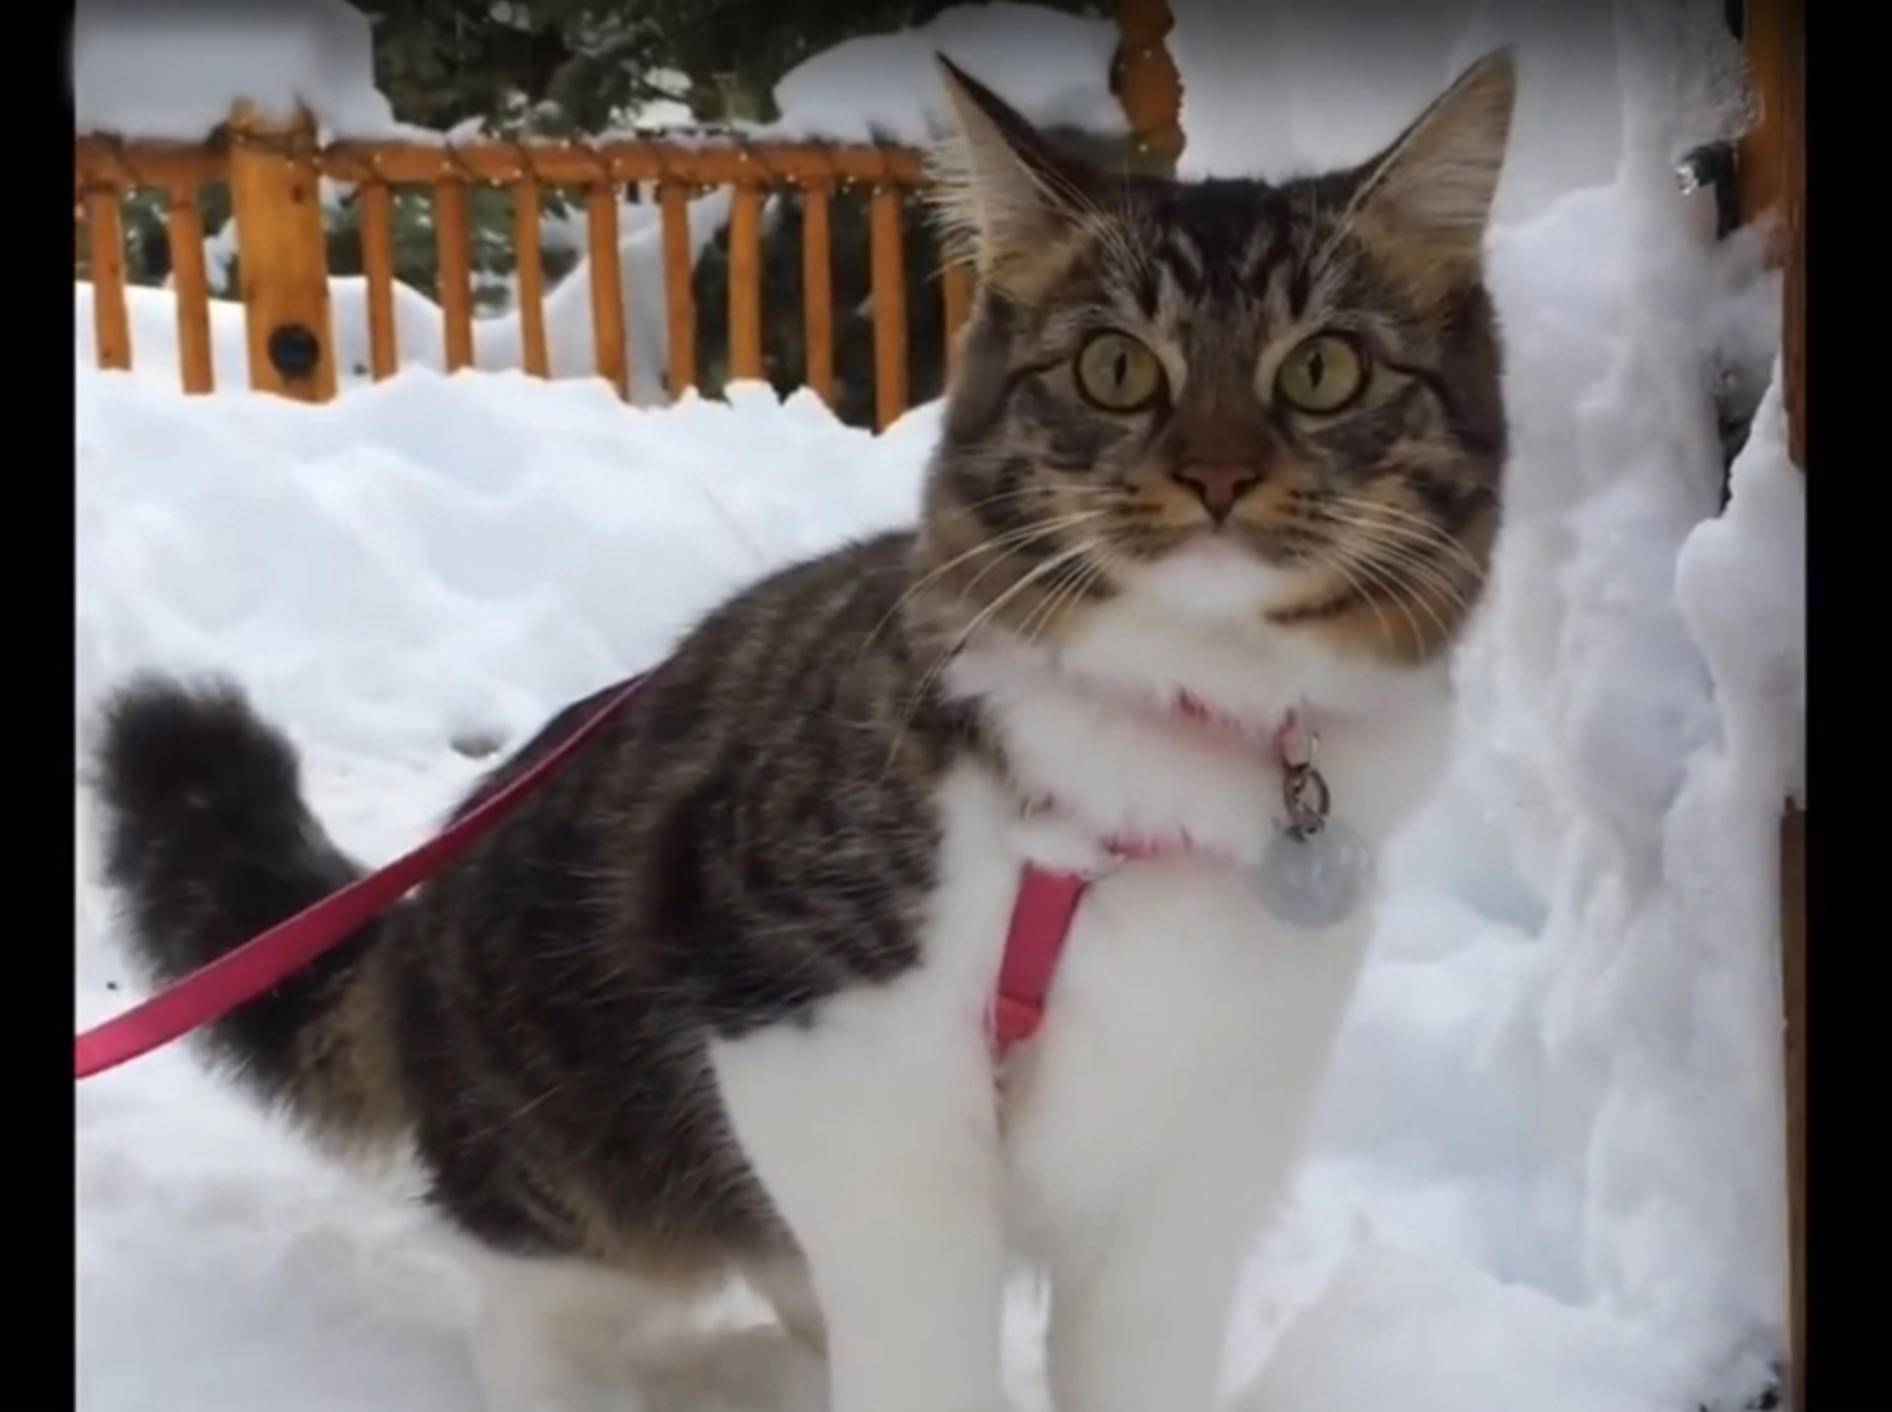 Katze Rosie bei ihrem ersten Schneeausflug mit Husky-Familie – YouTube / Lilothehusky